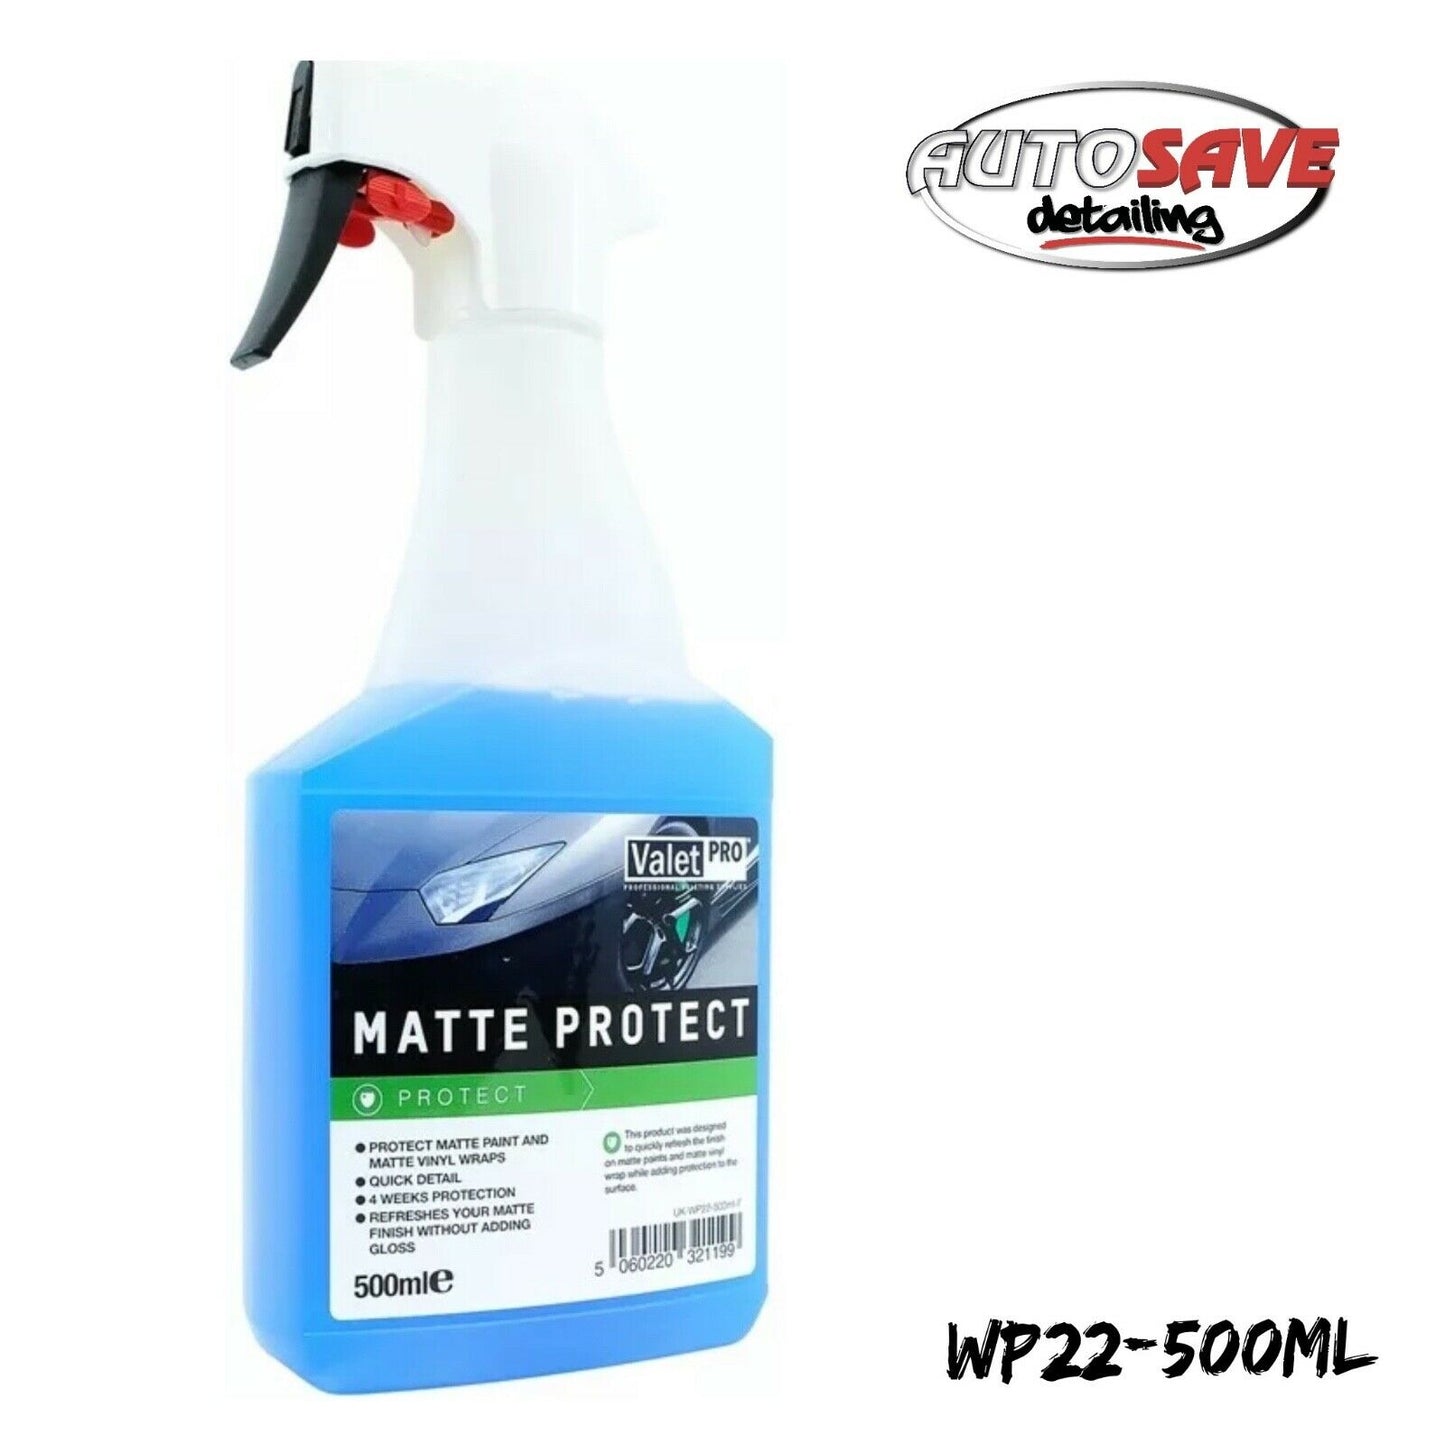 Valet Pro - Matte Protection - Matte Paint & Wrap Protector & Detailer - 500ml